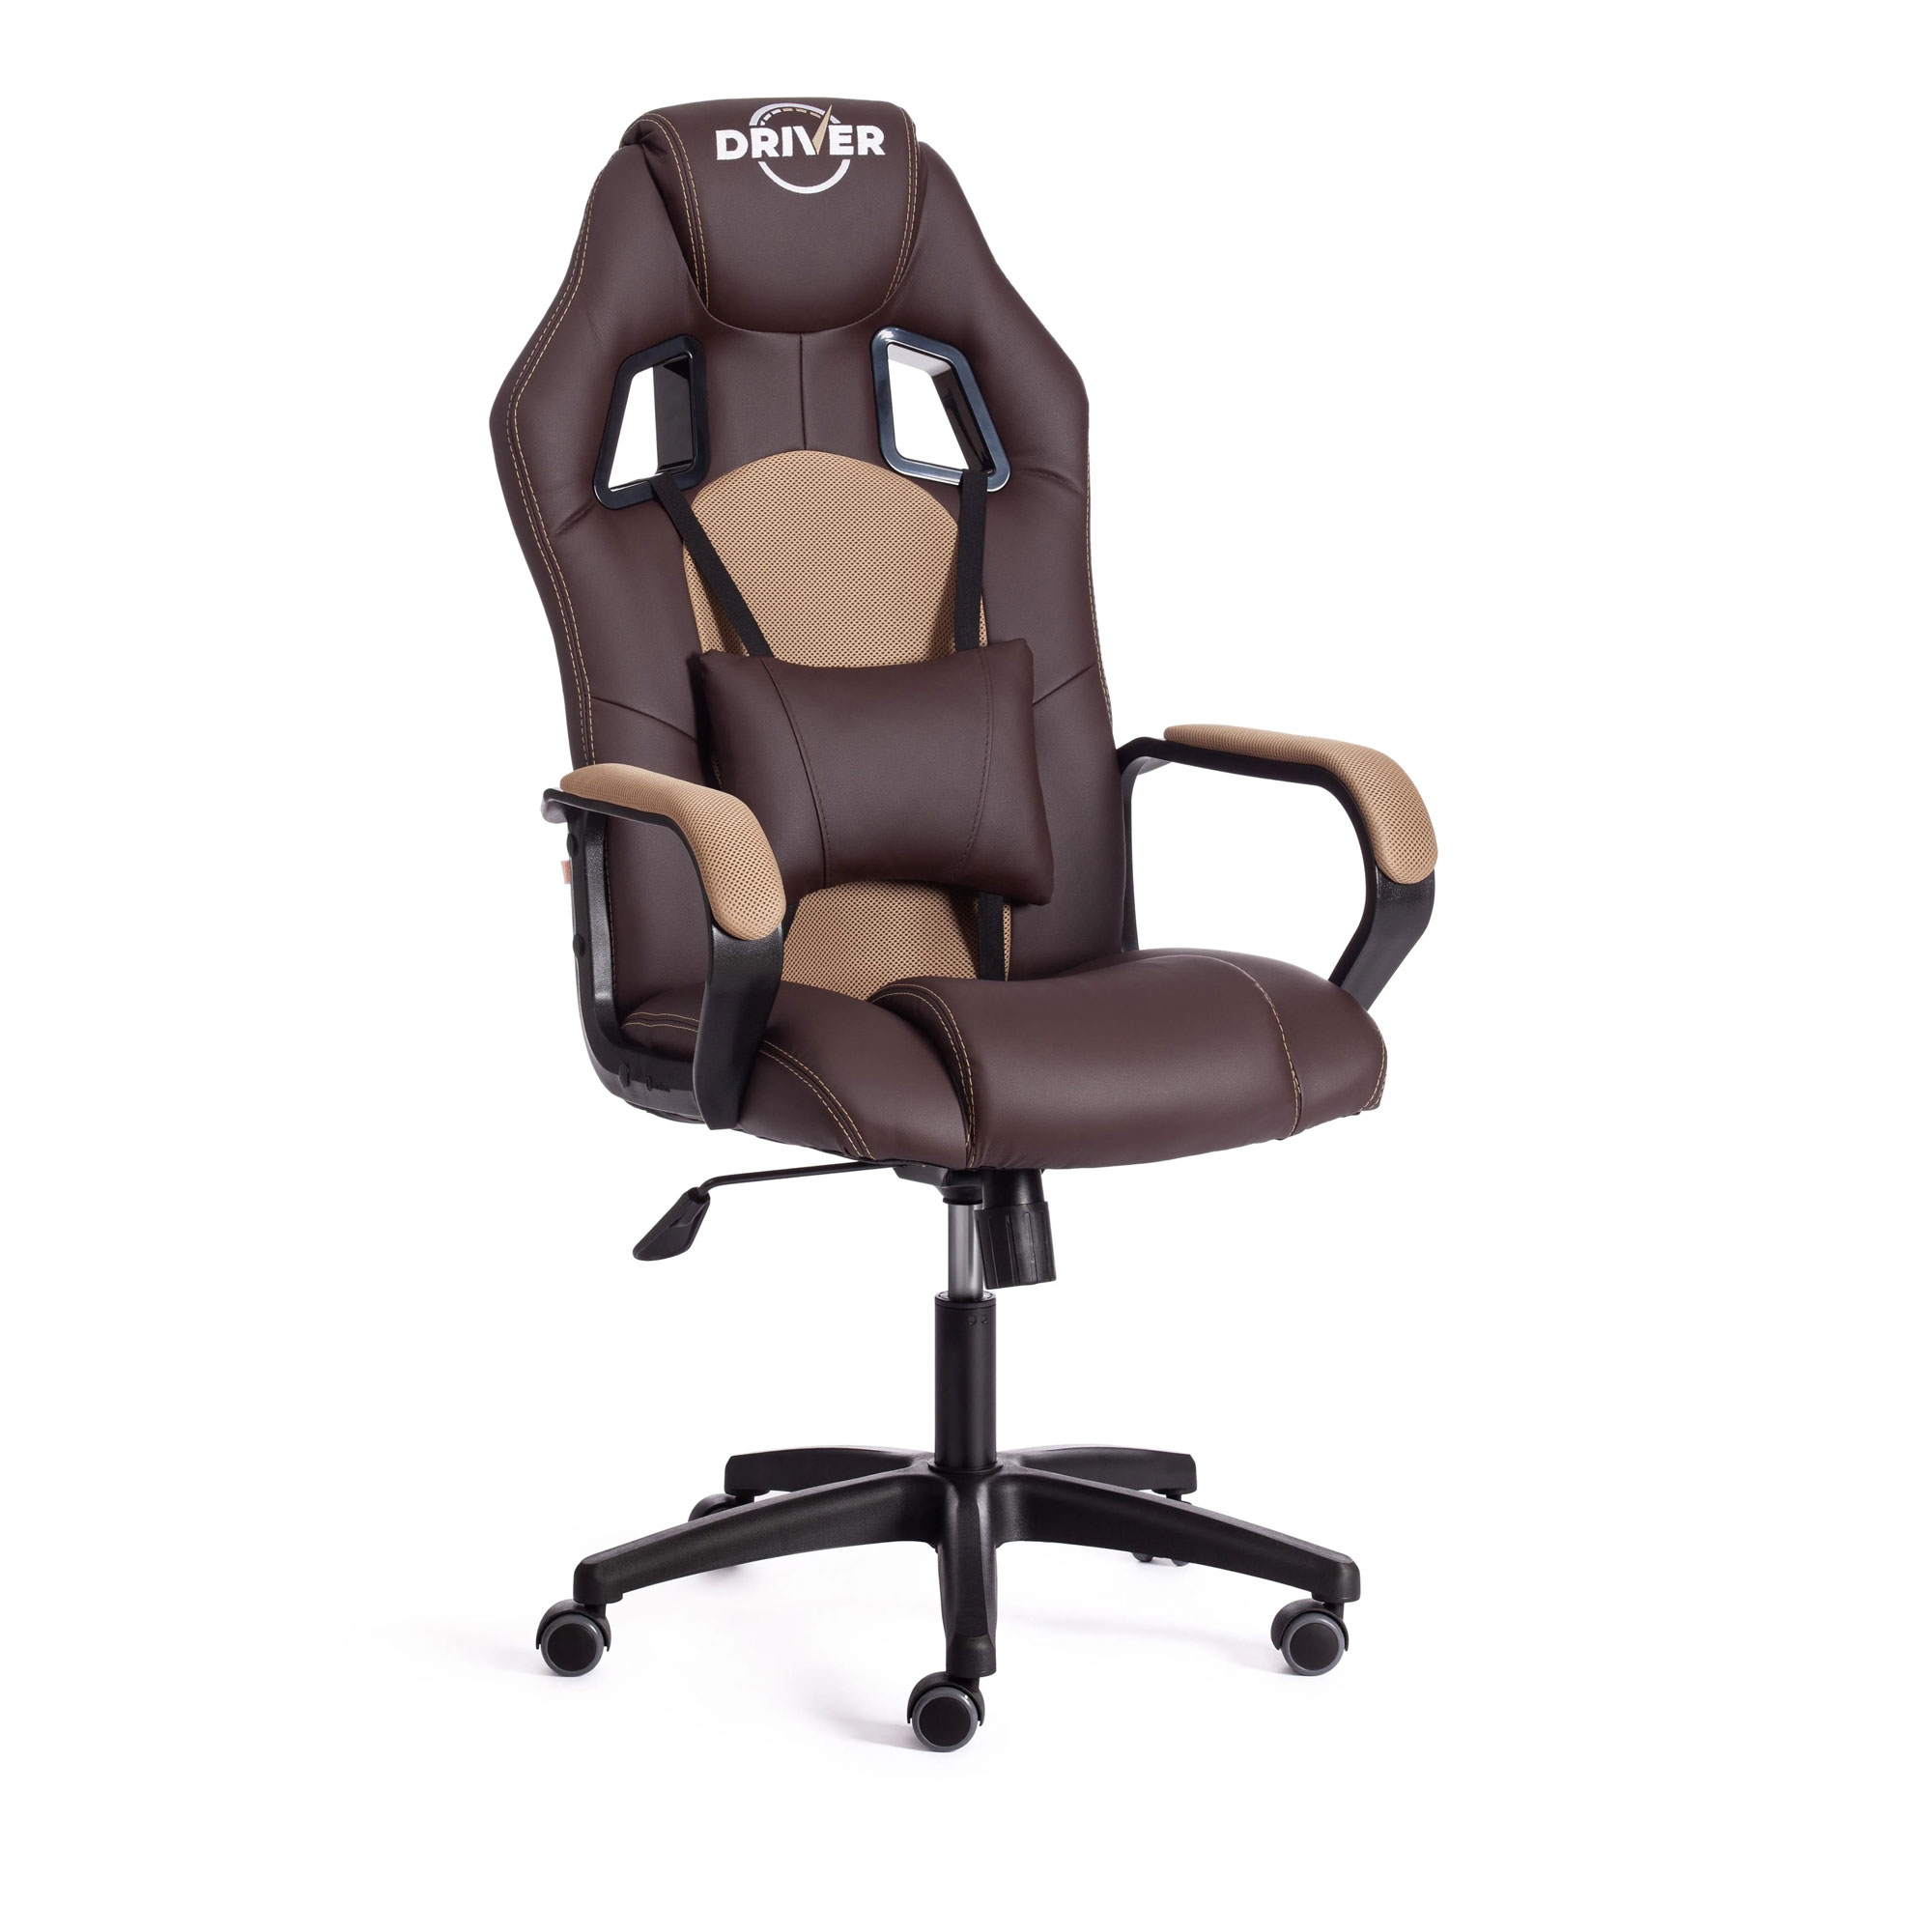 Кресло компьютерное TC Driver искусственная кожа коричневое с бронзовым 55х49х126 см кресло компьютерное tc driver искусственная кожа чёрное 55х49х126 см